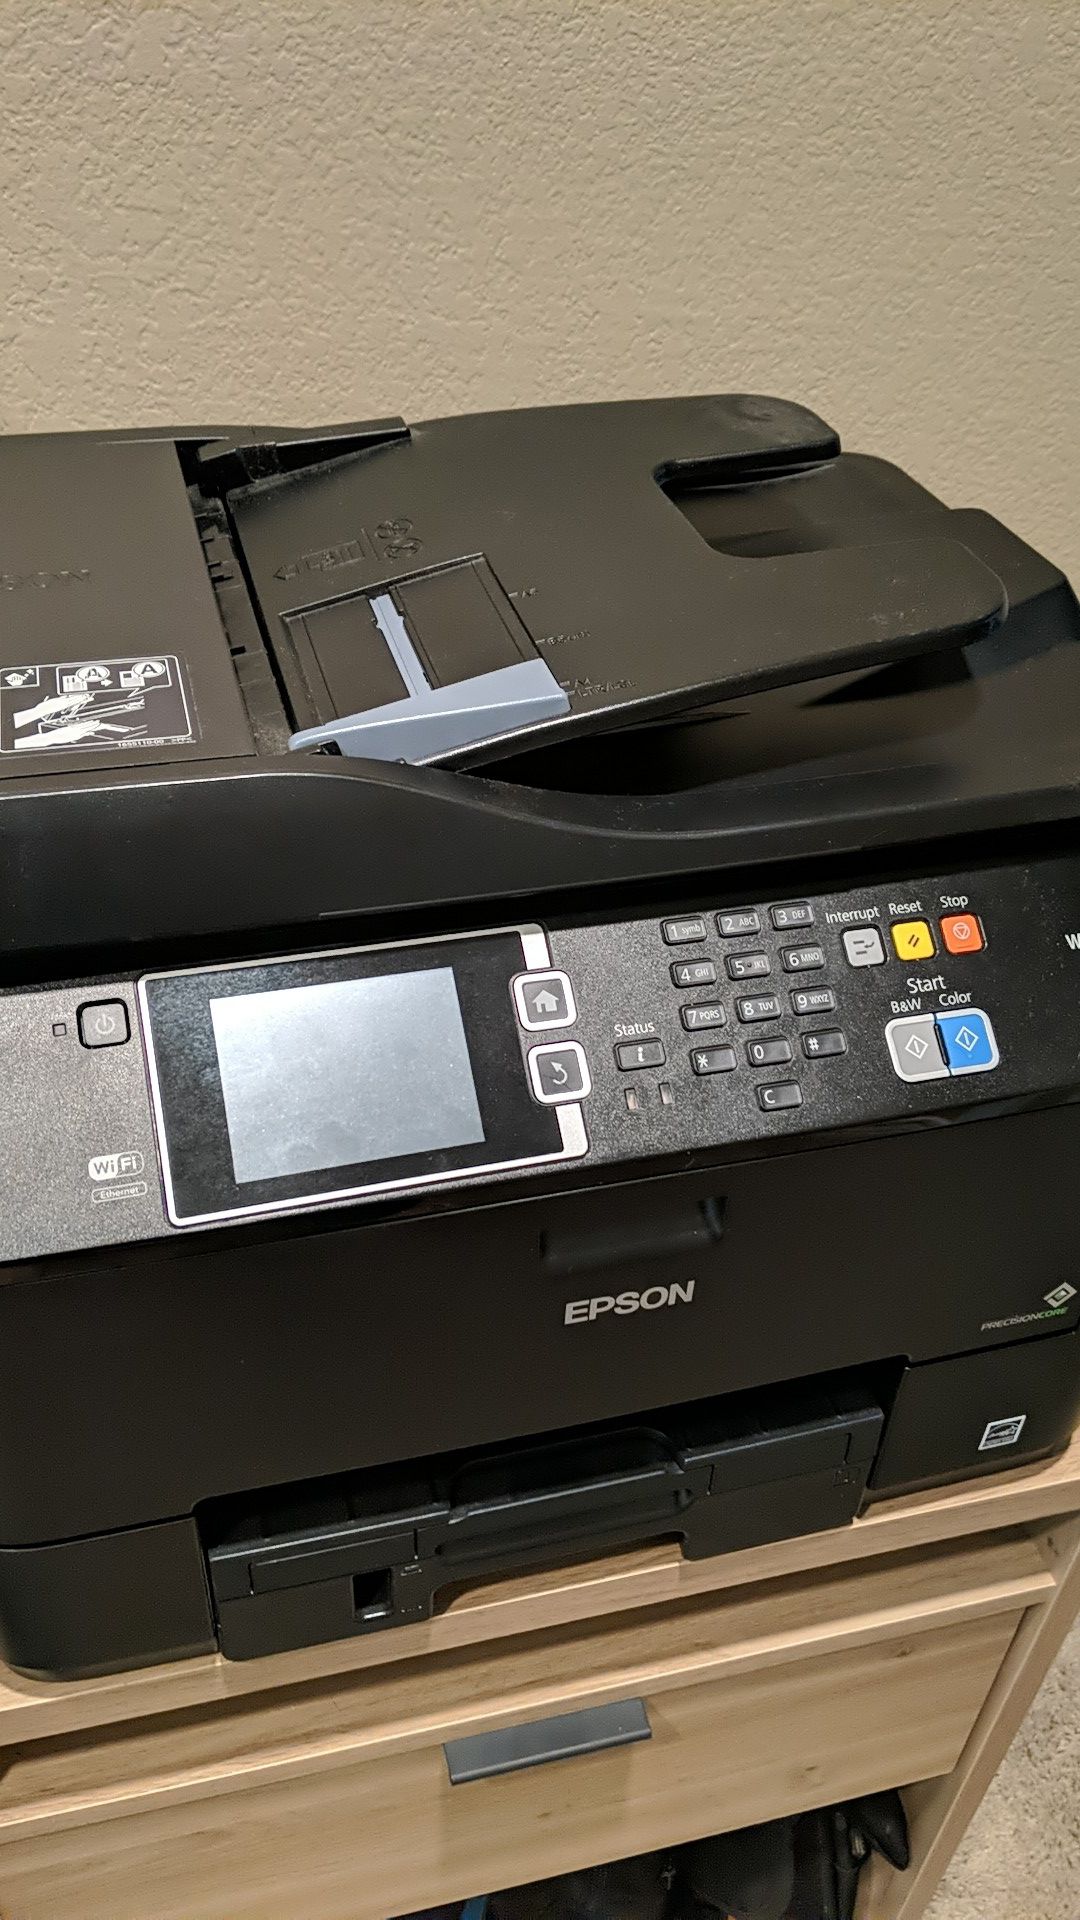 Epsom WF-4630 laser printer scanner and fax machine